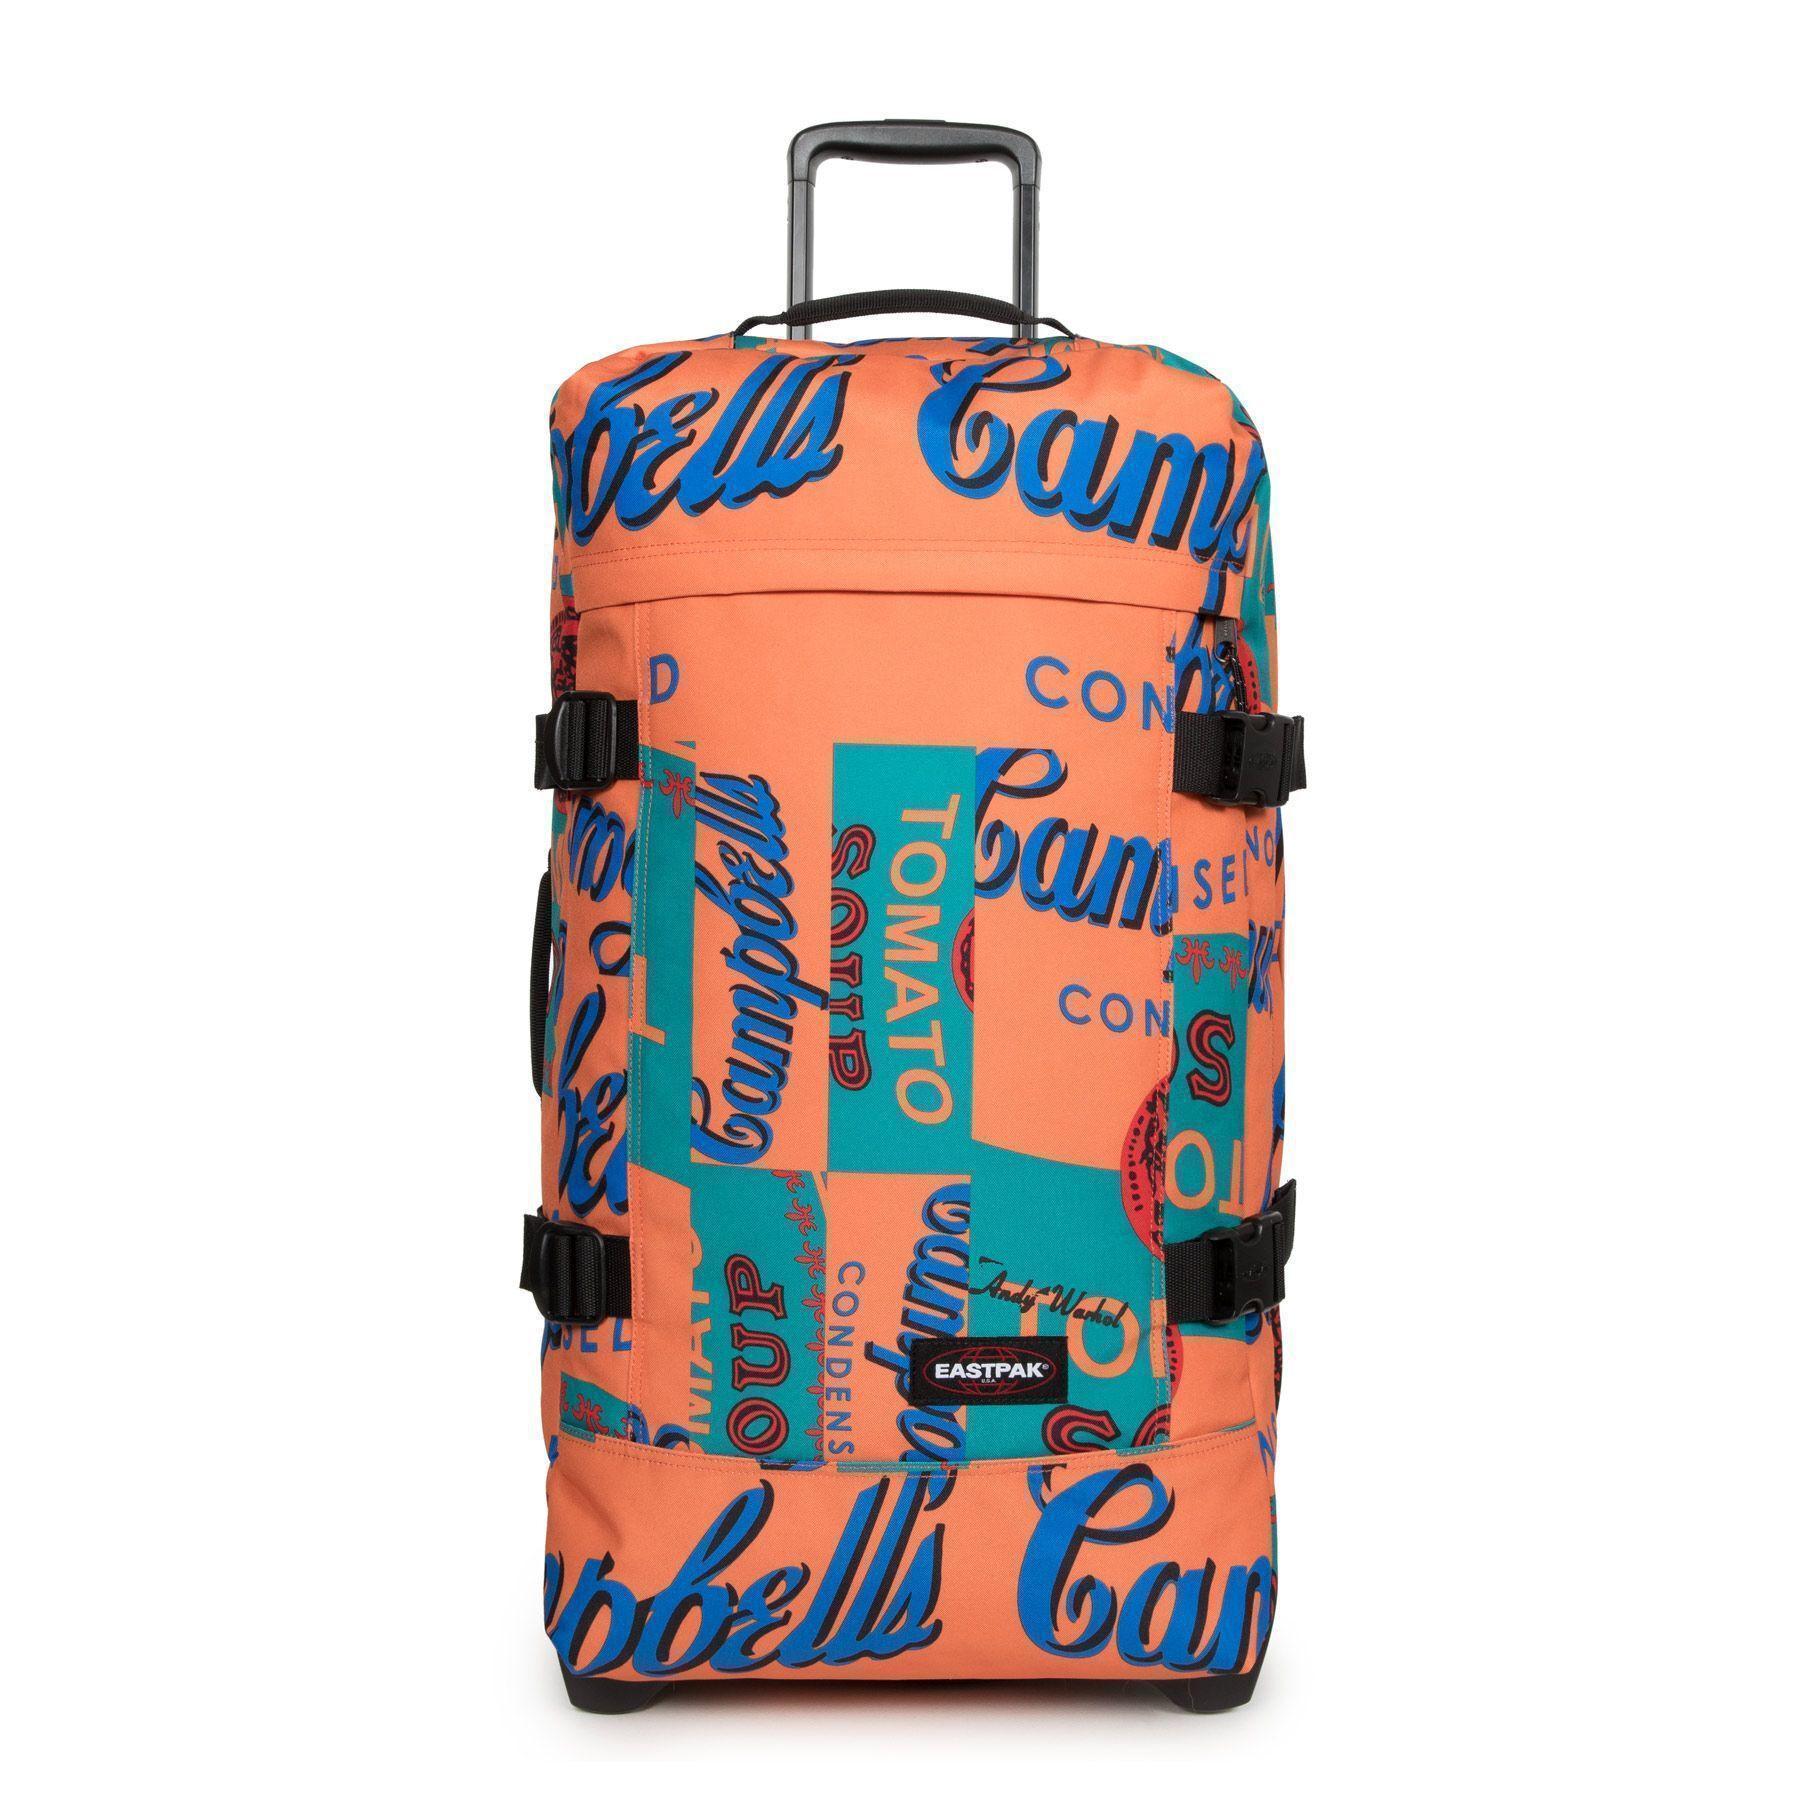 Travel bag Eastpak Tranverz M Andy Warhol